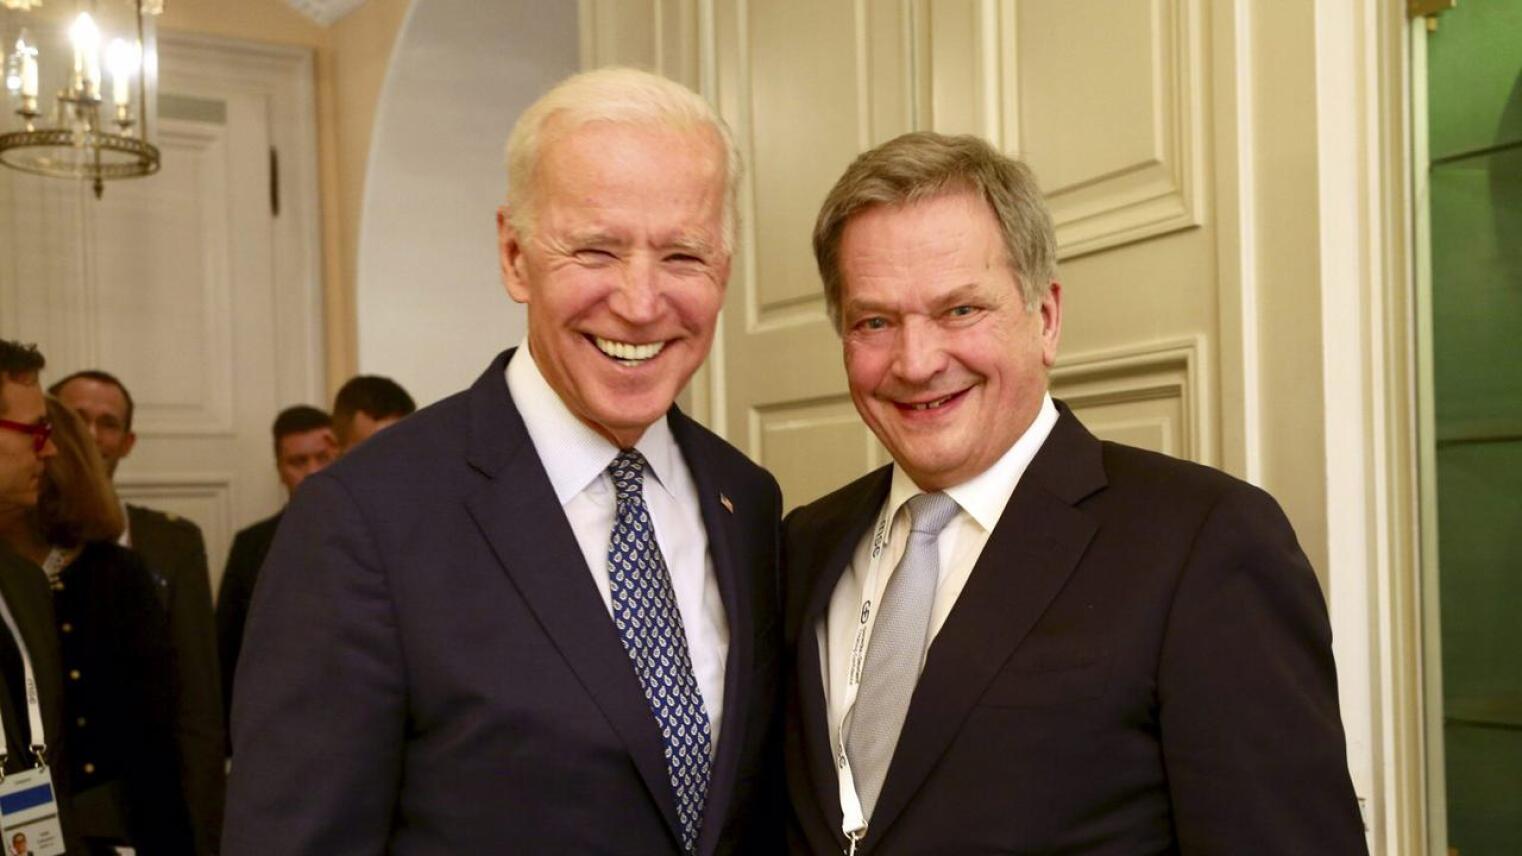 Tasavallan presidentti Sauli Niinistö tapasi Yhdysvaltain entisen varapresidentti Joe Bidenin (vas.) Münchenin turvallisuuskonferenssissa Saksassa 17. helmikuuta 2018.